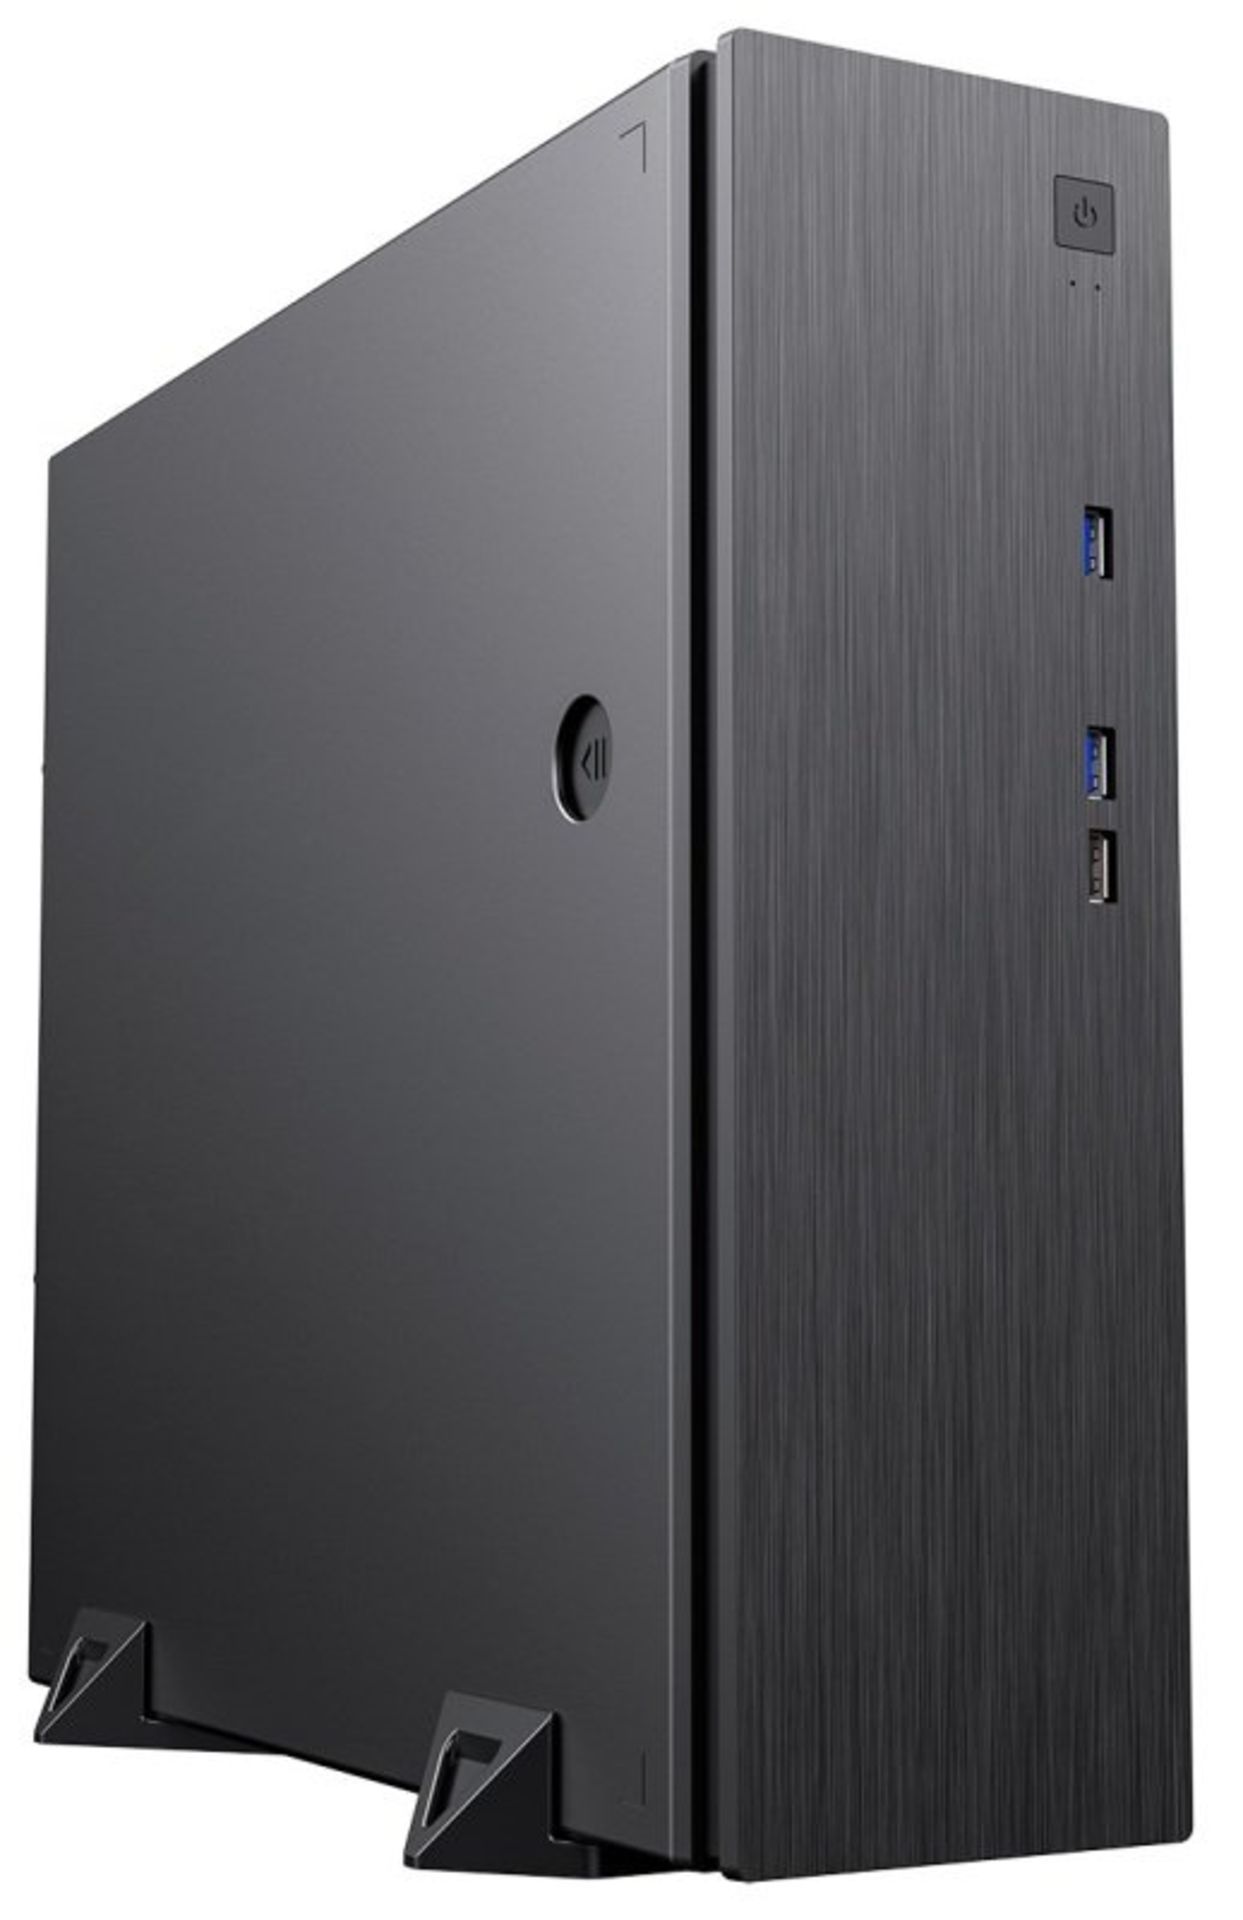 3x NEW & BOXED CIT S506 Micro ATX Desktop Case - BLACK. RRP £44.99 EACH. (PCK). The CiT S506 slim